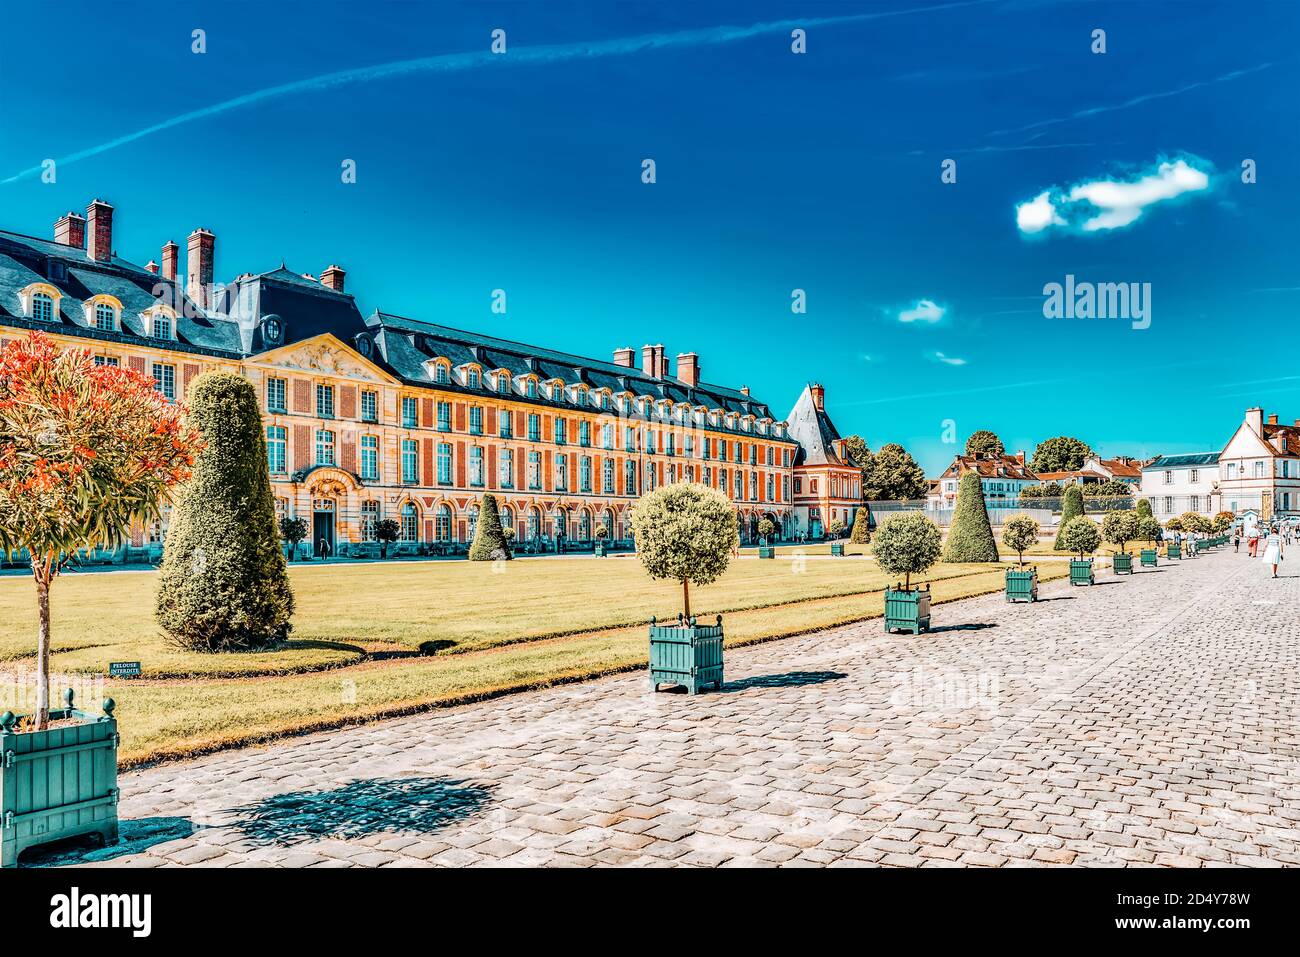 FONTAINEBLEAU, Frankreich - 9. Juli 2016: S Residenz der Könige Frankreich - schöne Schloss Fontainebleau und seinem Park umgeben. Stockfoto